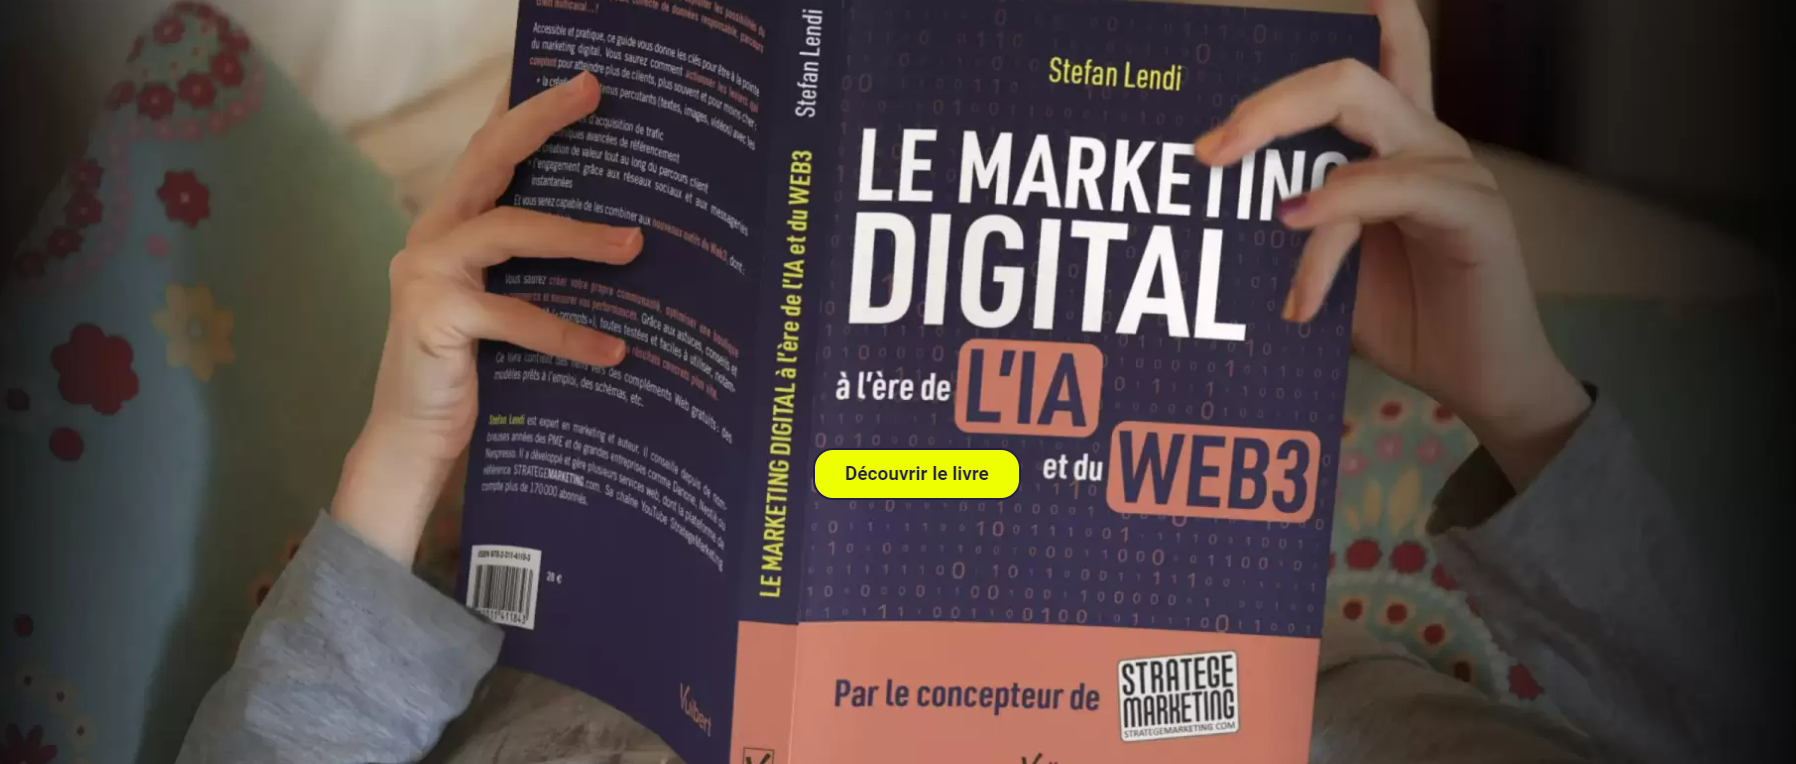 Le Marketing Digital à l'ère de l'IA et du Web 3 - Ce qu'il faut retenir du nouveau livre de Stefan Lendi 24